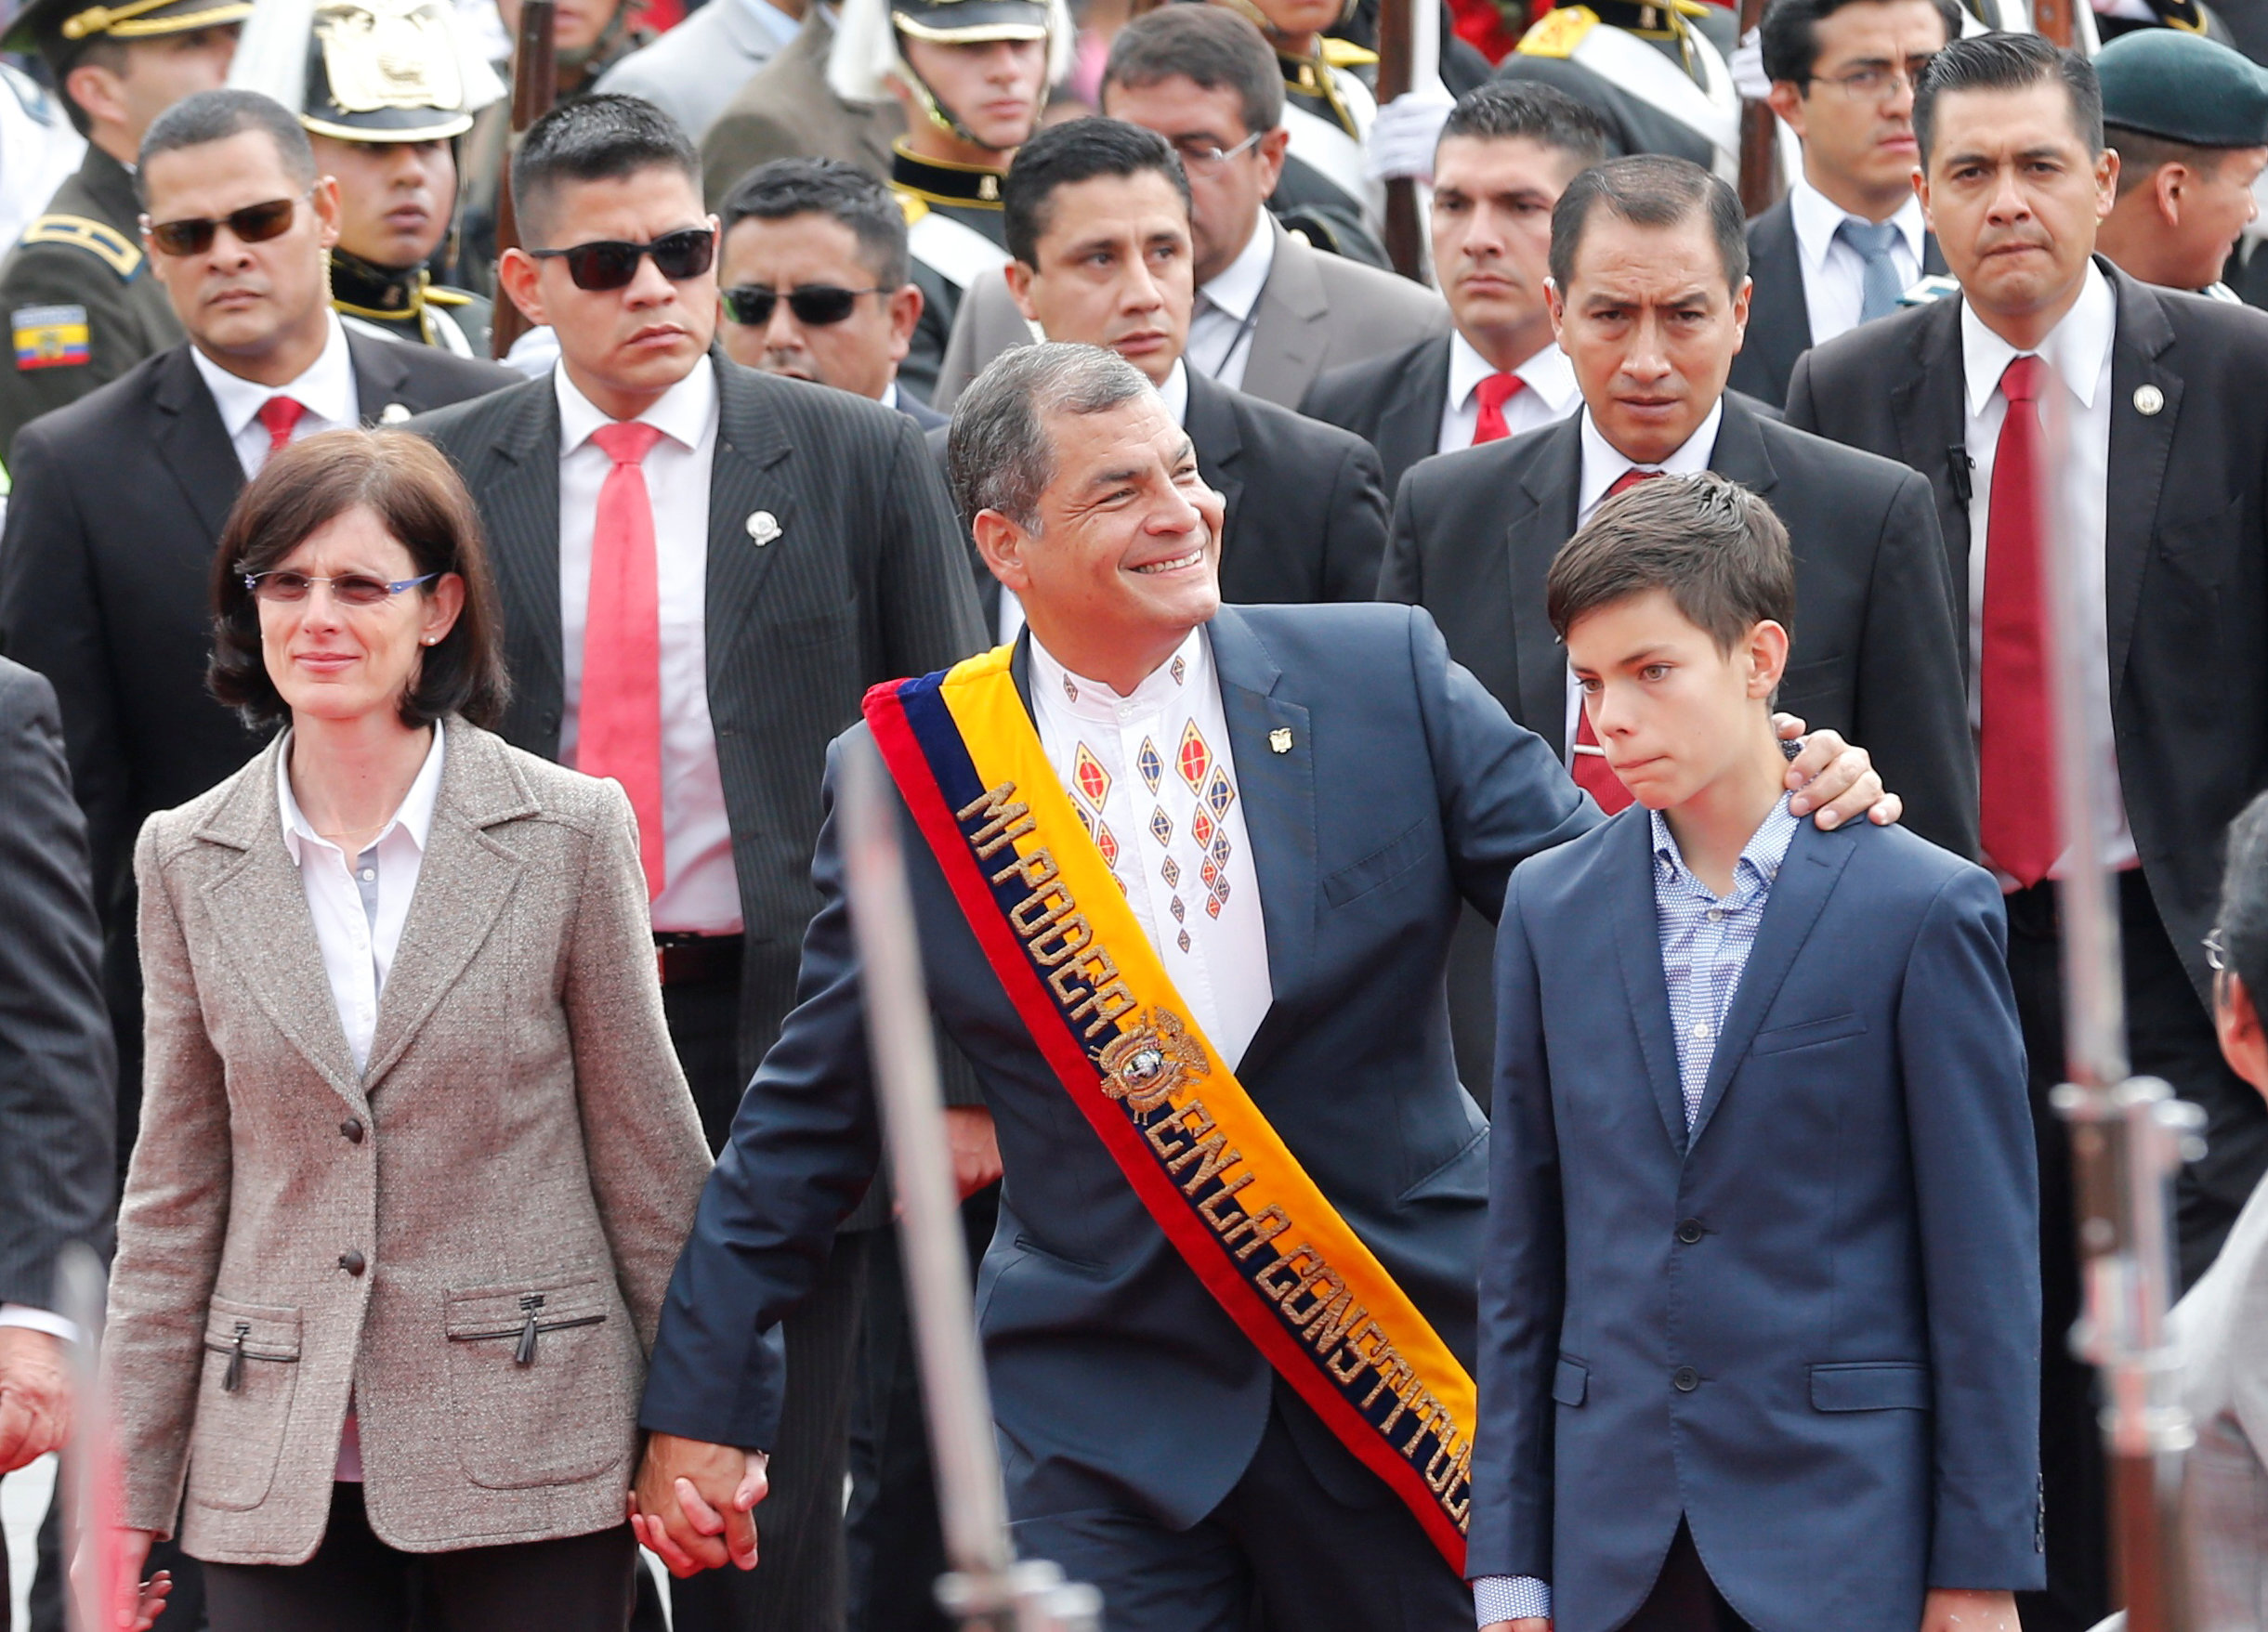 حضور الرئيس السابق رافائيل كورا بصحبه زوجته وابنه لتسليم السلطة